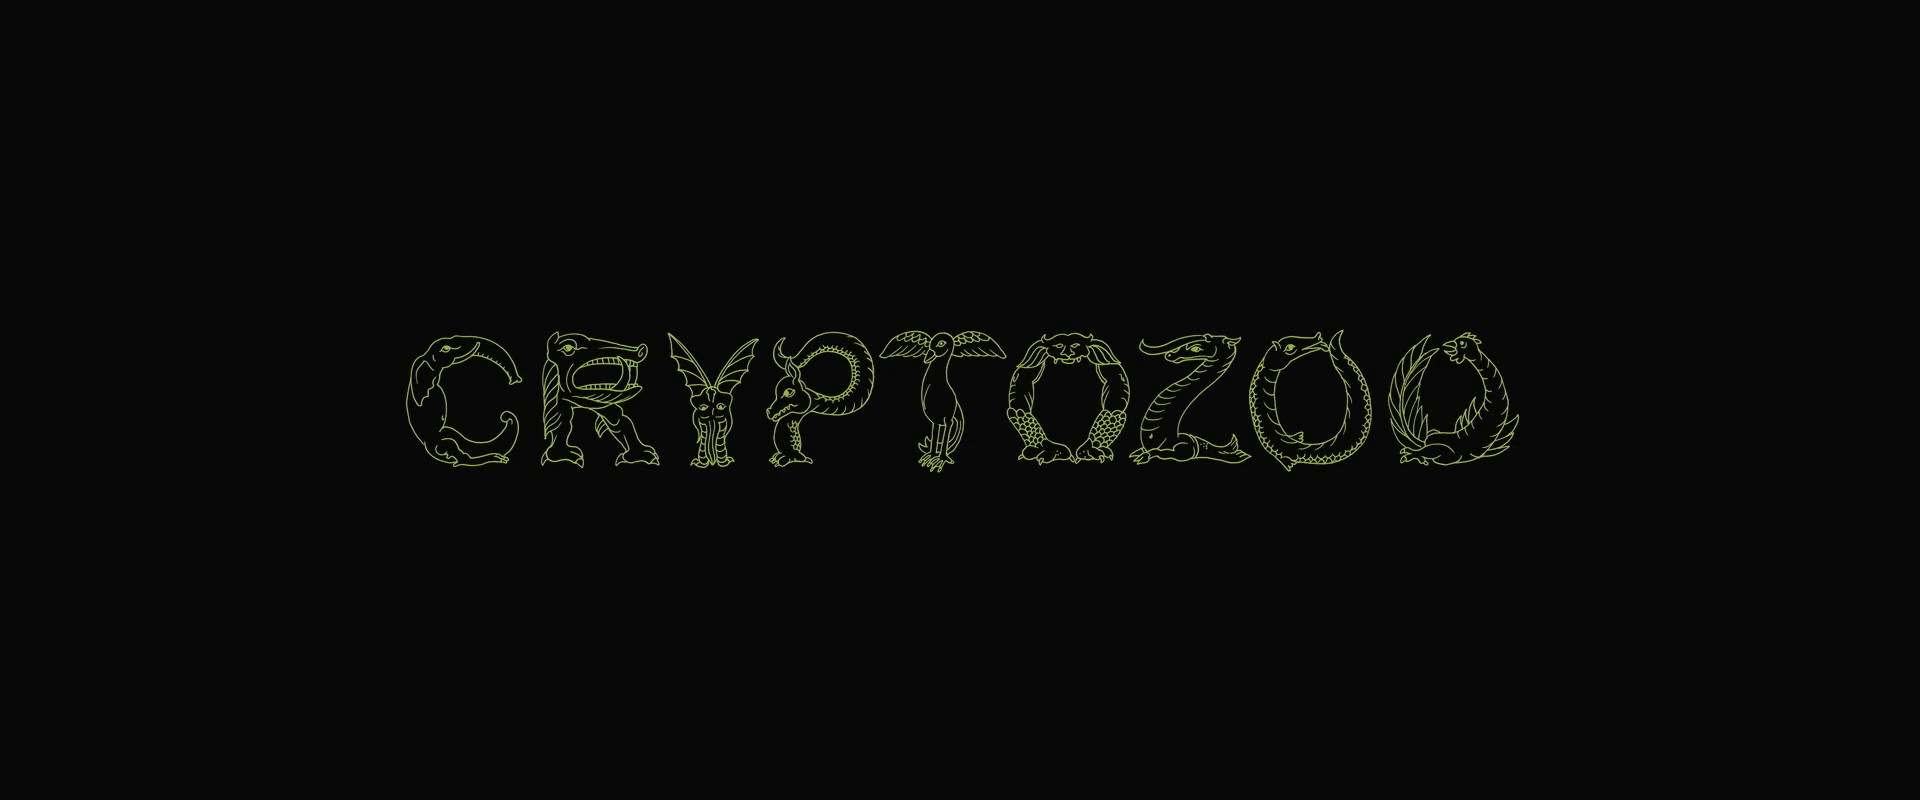 Cryptozoo background 2